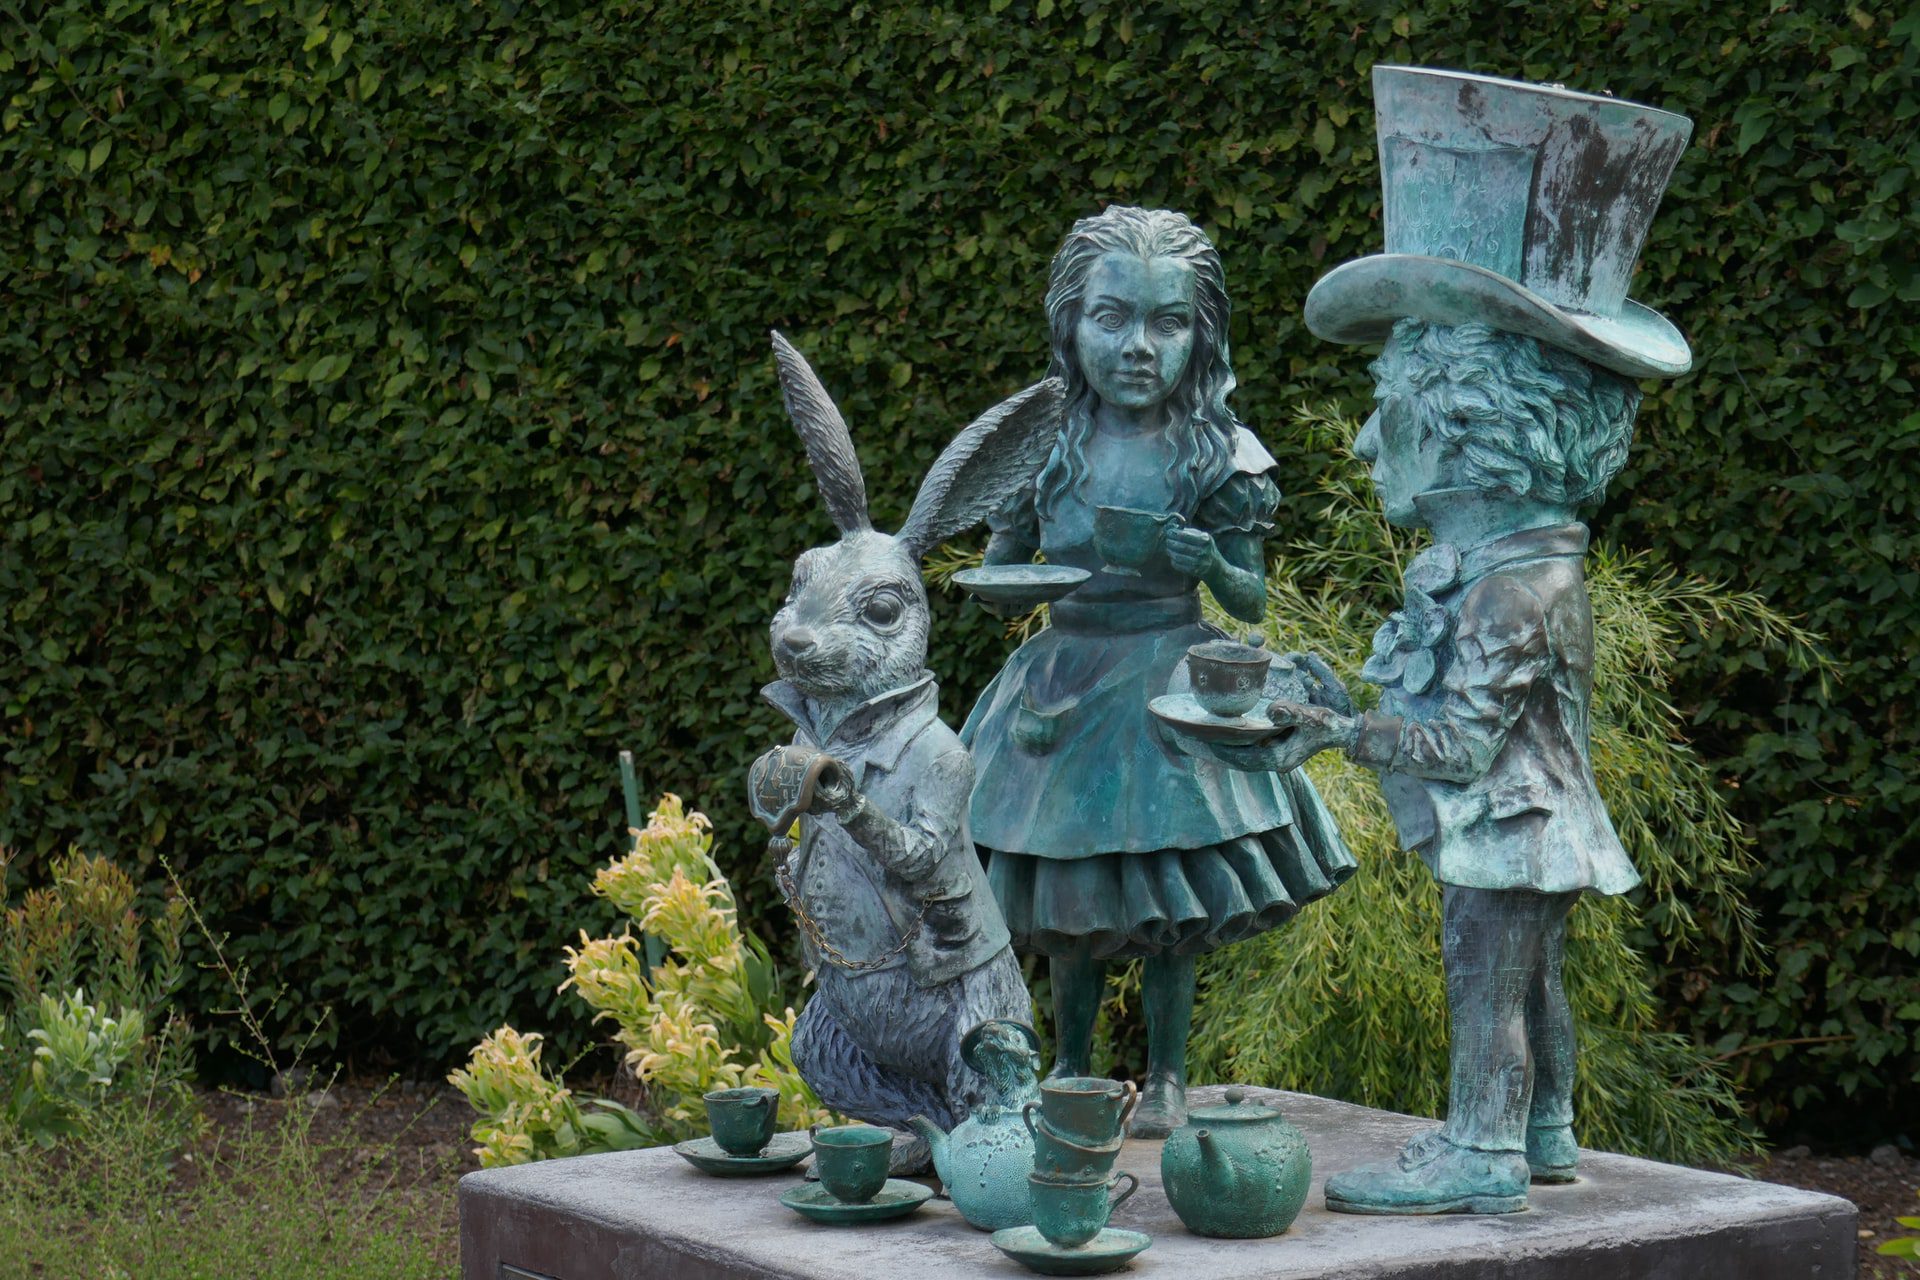 Alice in Wonderland Day